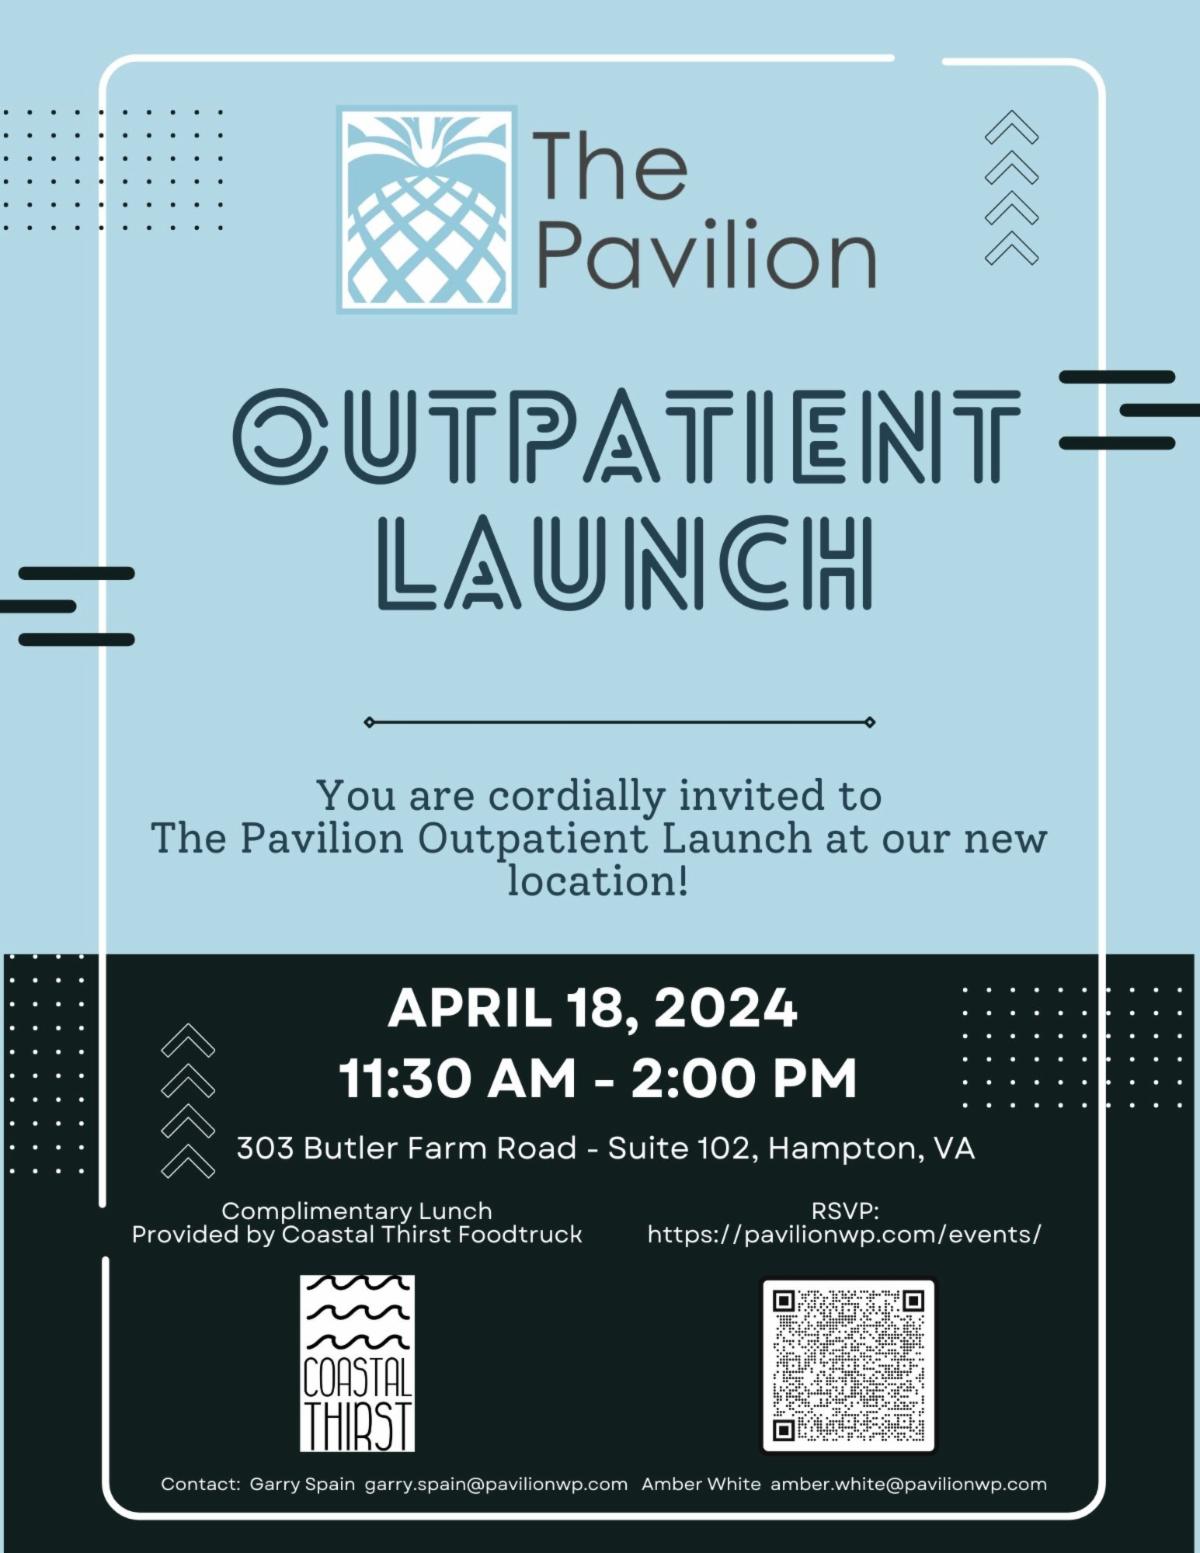 The Pavilion Outpatient Launch